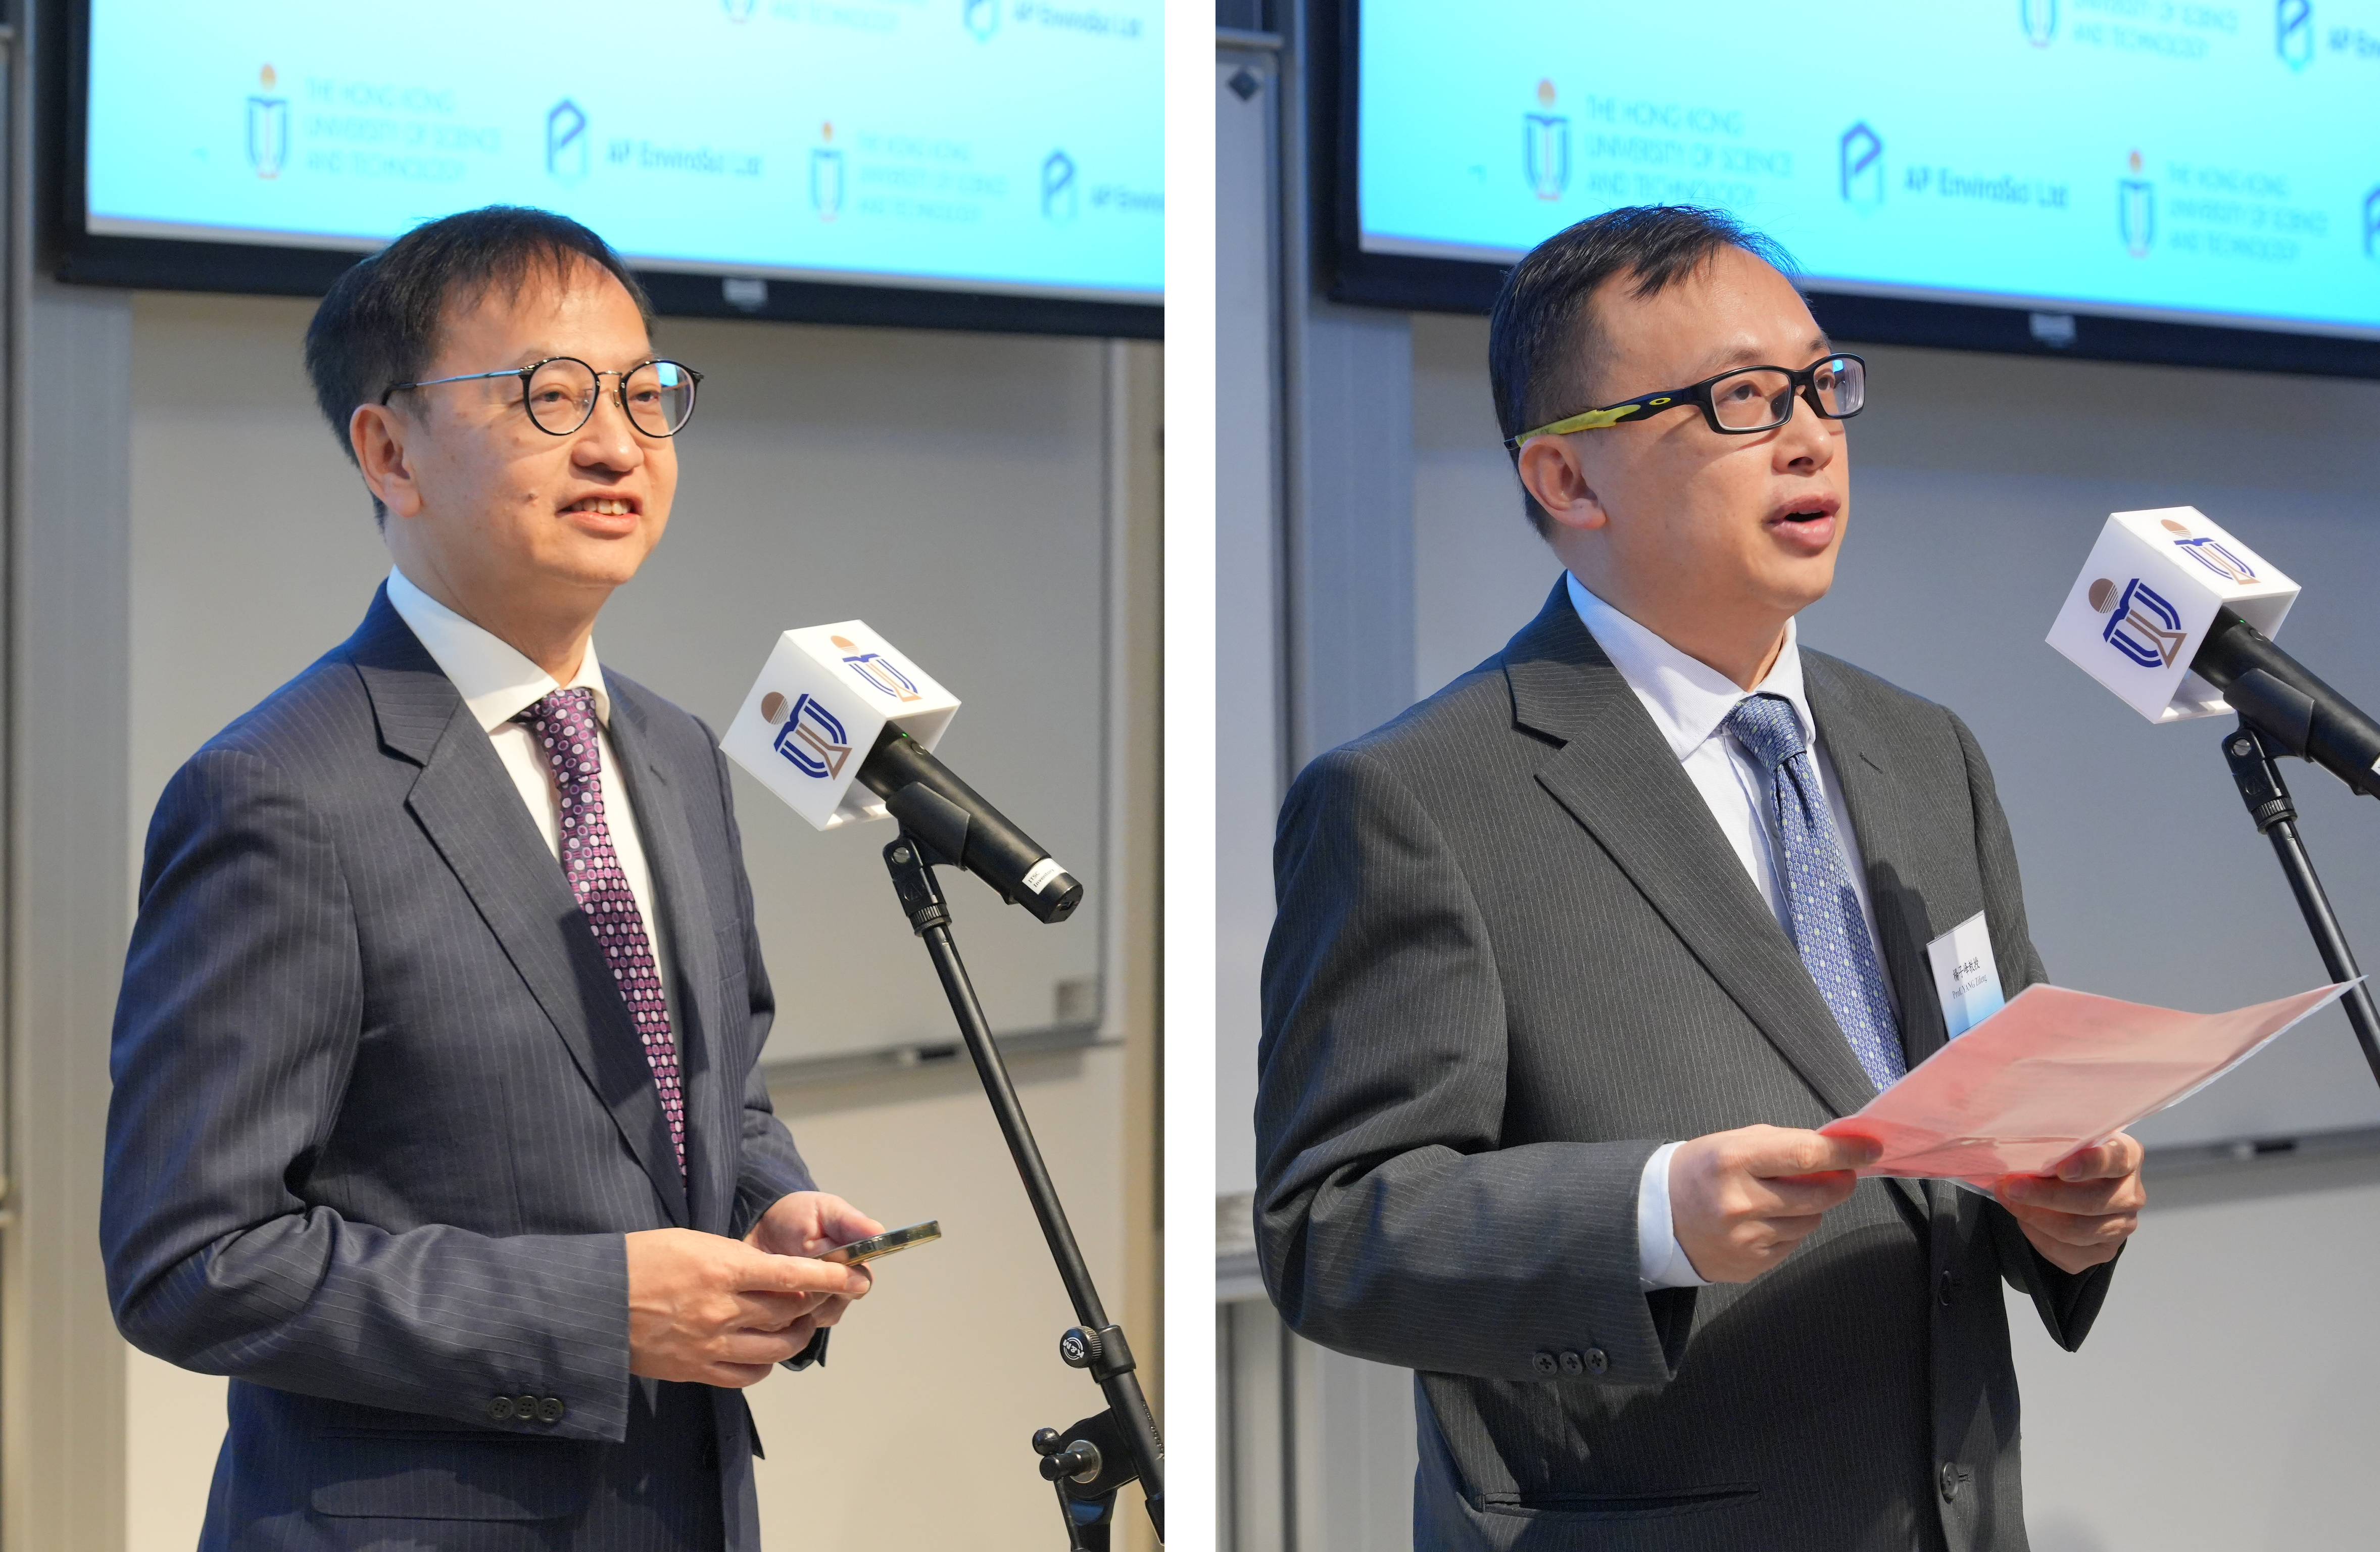 APEL主席鍾偉强博士（左）及廣州醫科大學附屬第一醫院廣州呼吸健康研究院副院長楊子峰教授（右）為活動致辭。